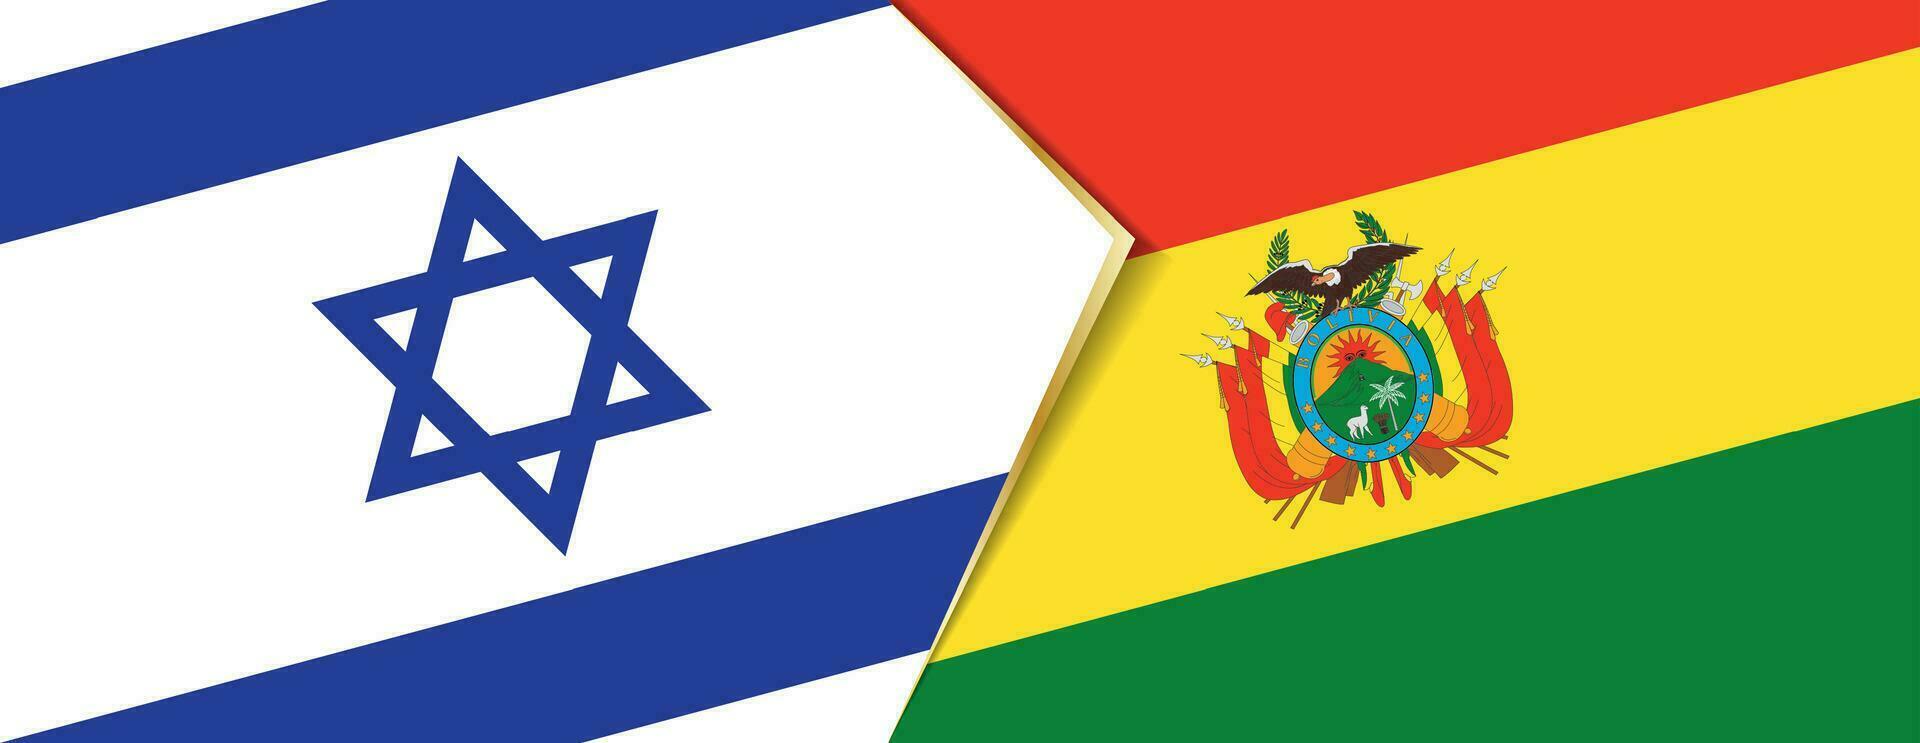 Israel und Bolivien Flaggen, zwei Vektor Flaggen.